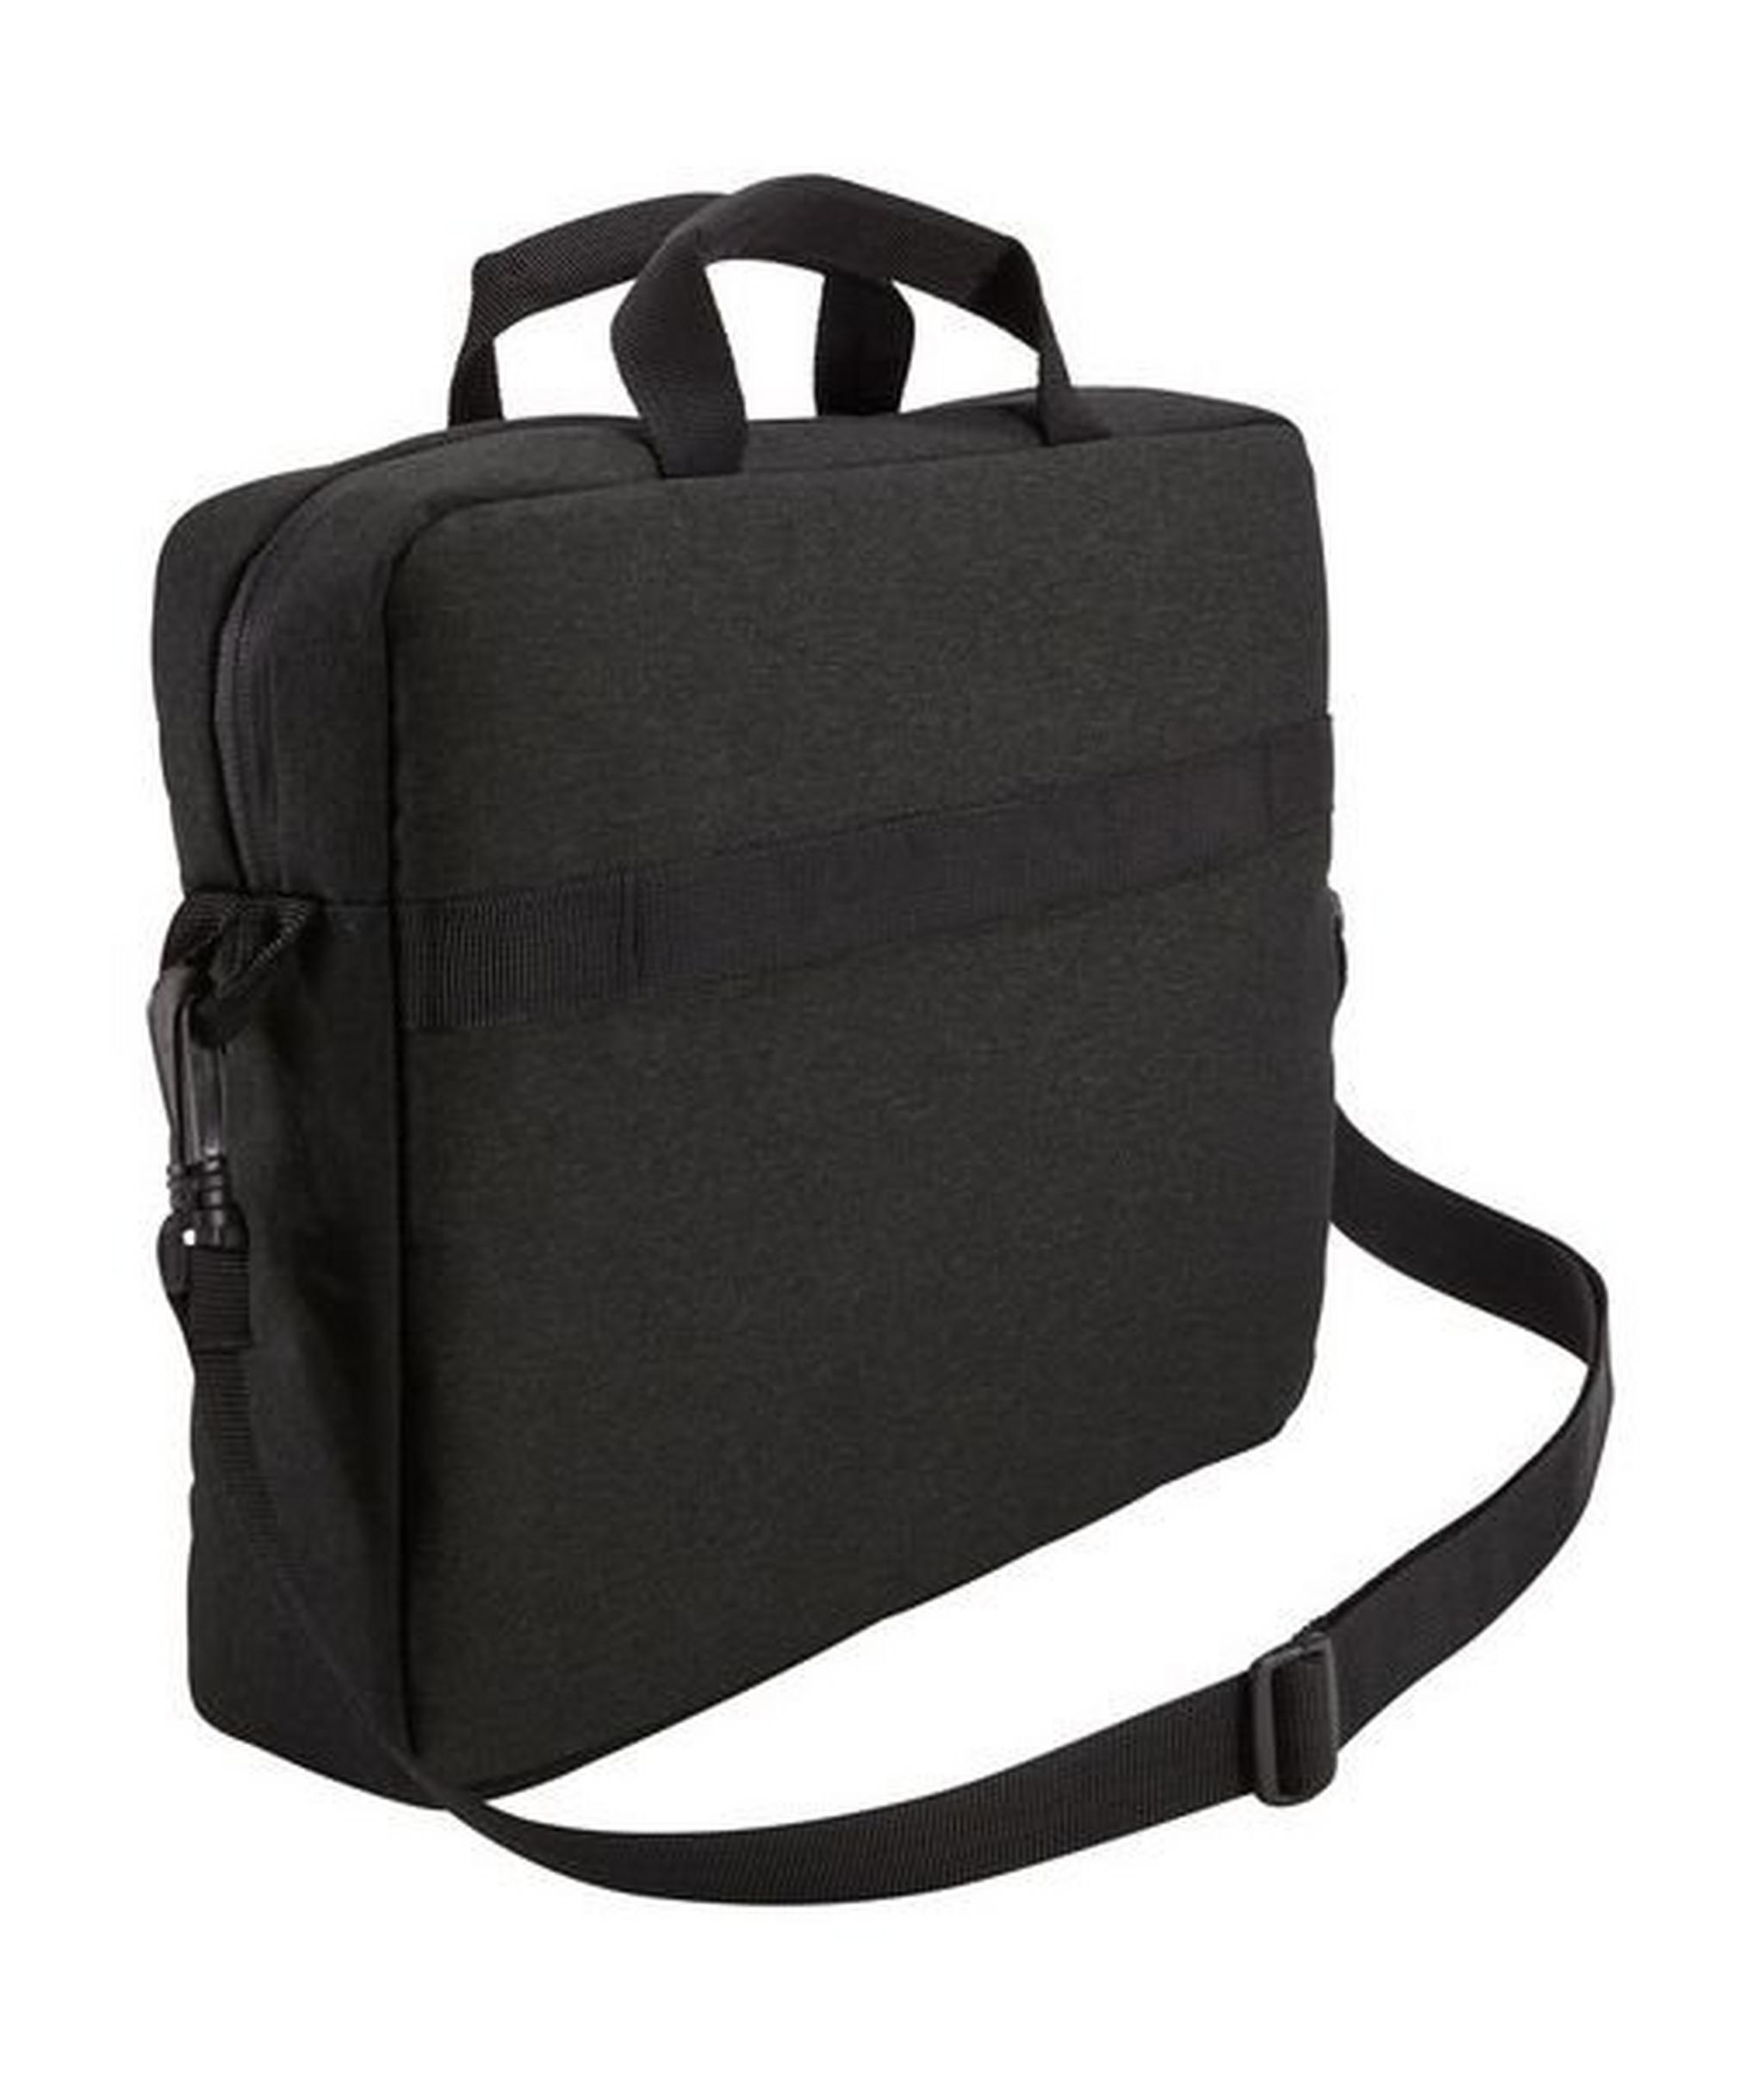 حقيبة كيس لوجيك هاكستن لأجهزة اللابتوب بحجم ١٣.٣ بوصة ـ أسود - HUXA113